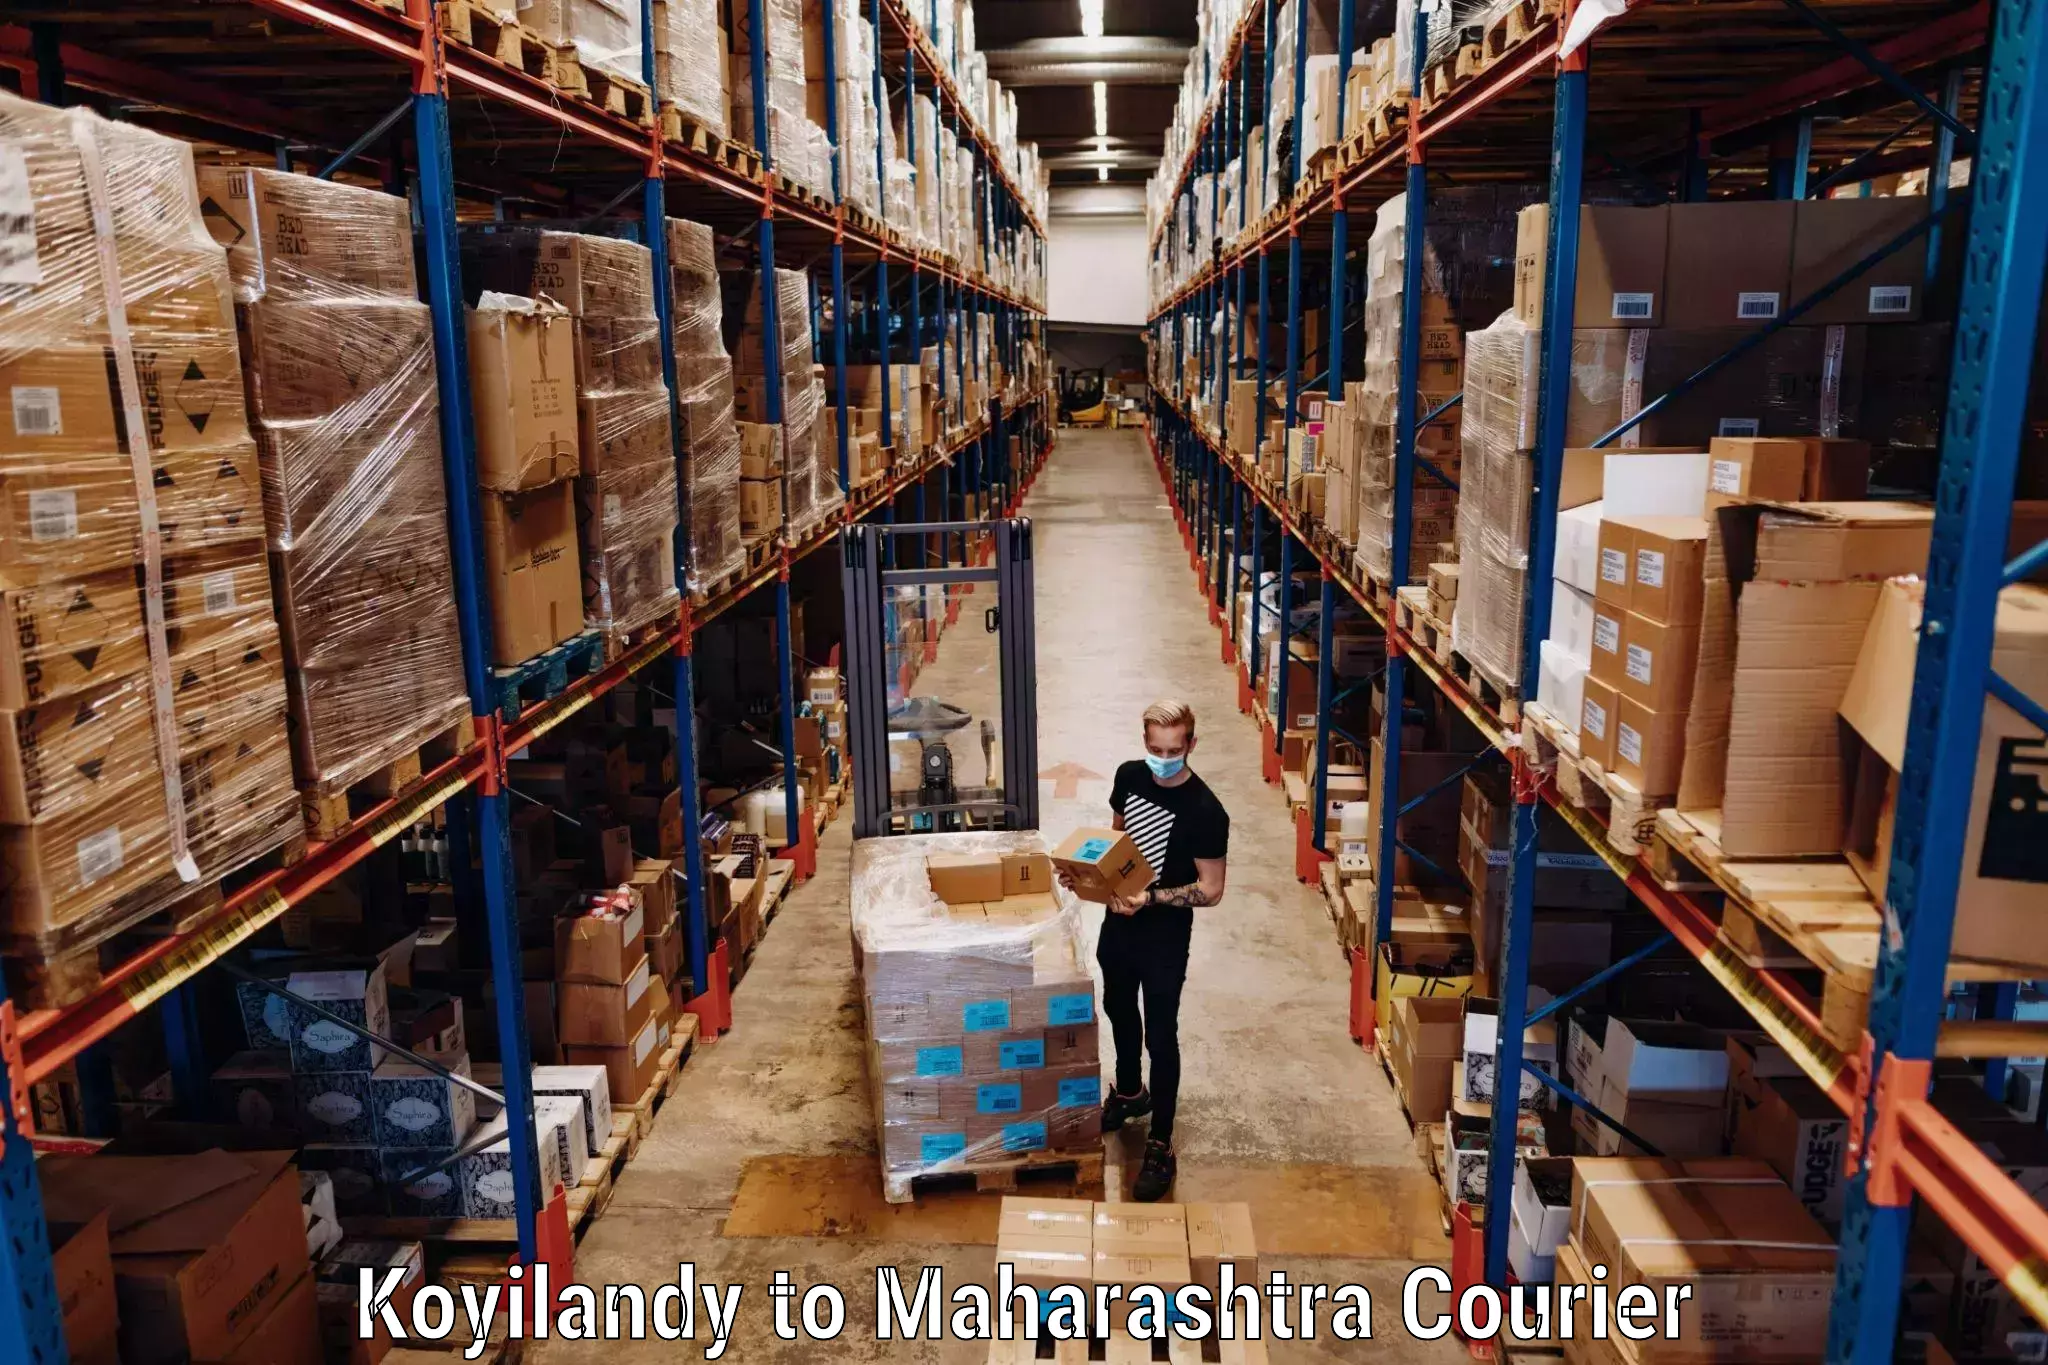 Baggage shipping experts Koyilandy to Maharashtra